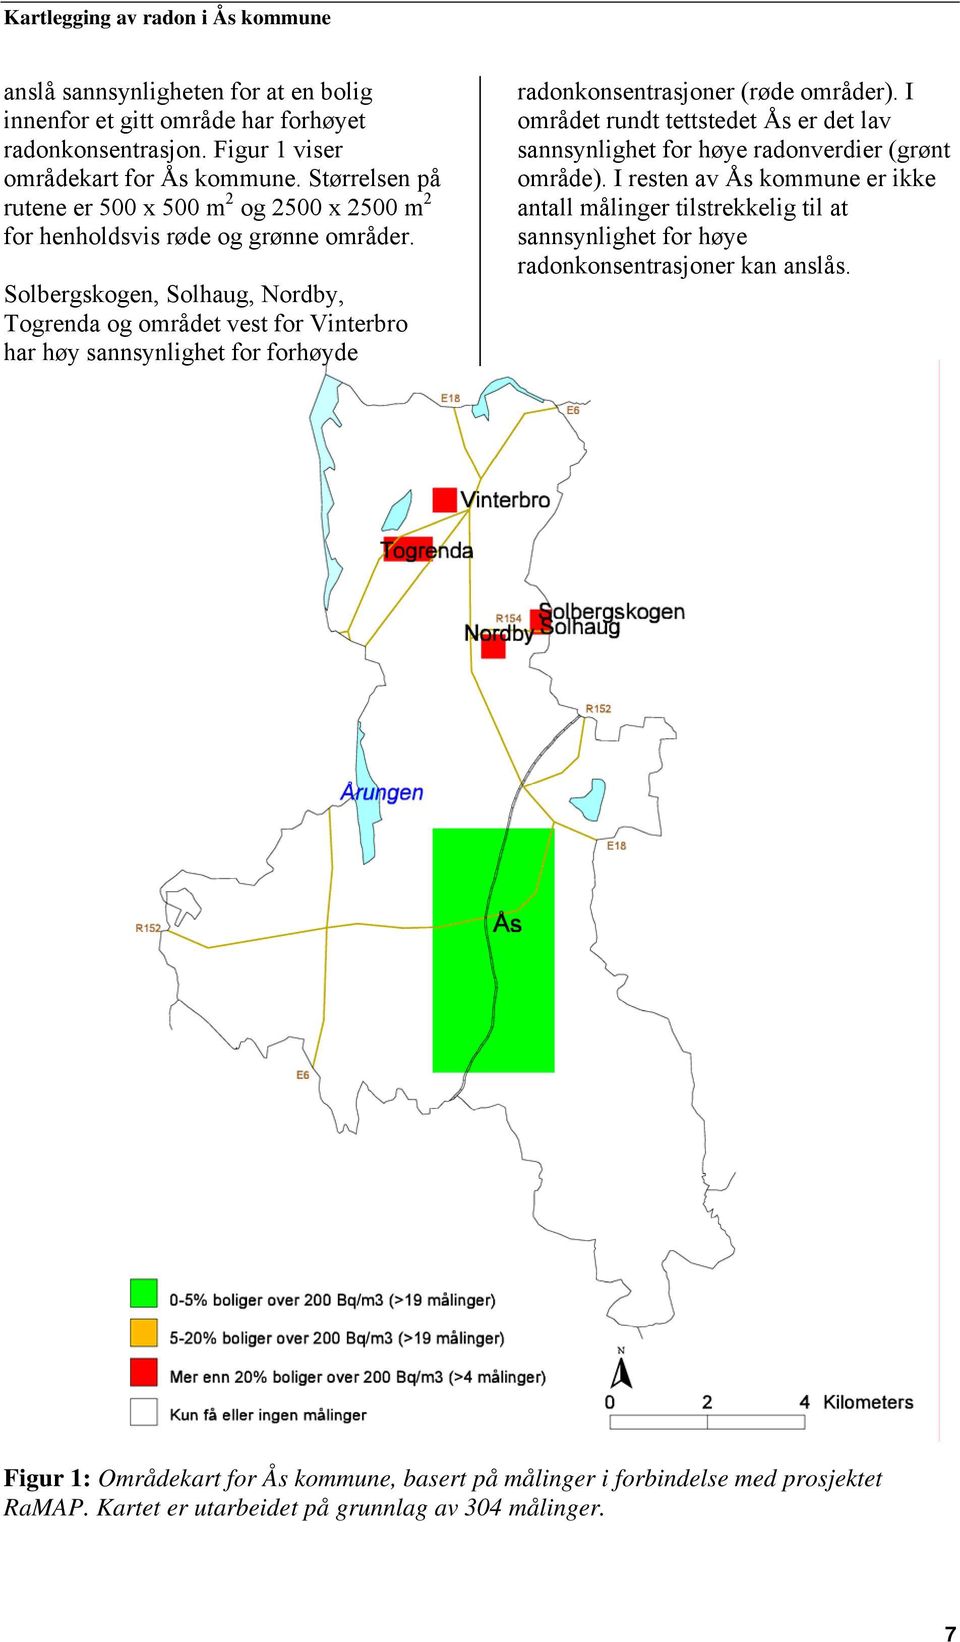 Solbergskogen, Solhaug, Nordby, Togrenda og området vest for Vinterbro har høy sannsynlighet for forhøyde radonkonsentrasjoner (røde områder).